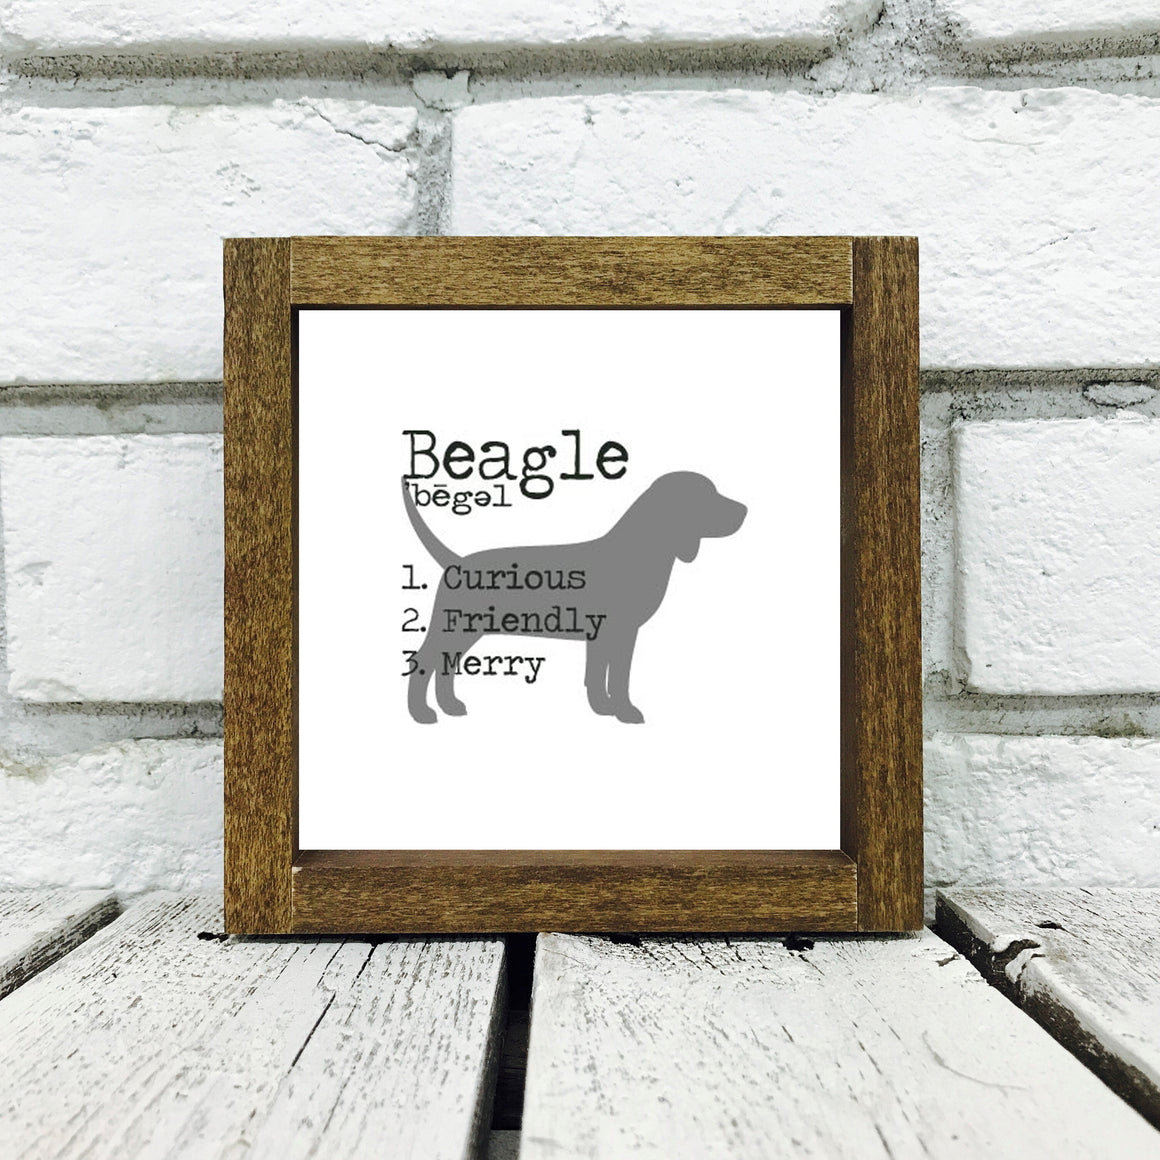 Beagle Dog Wooden Sign